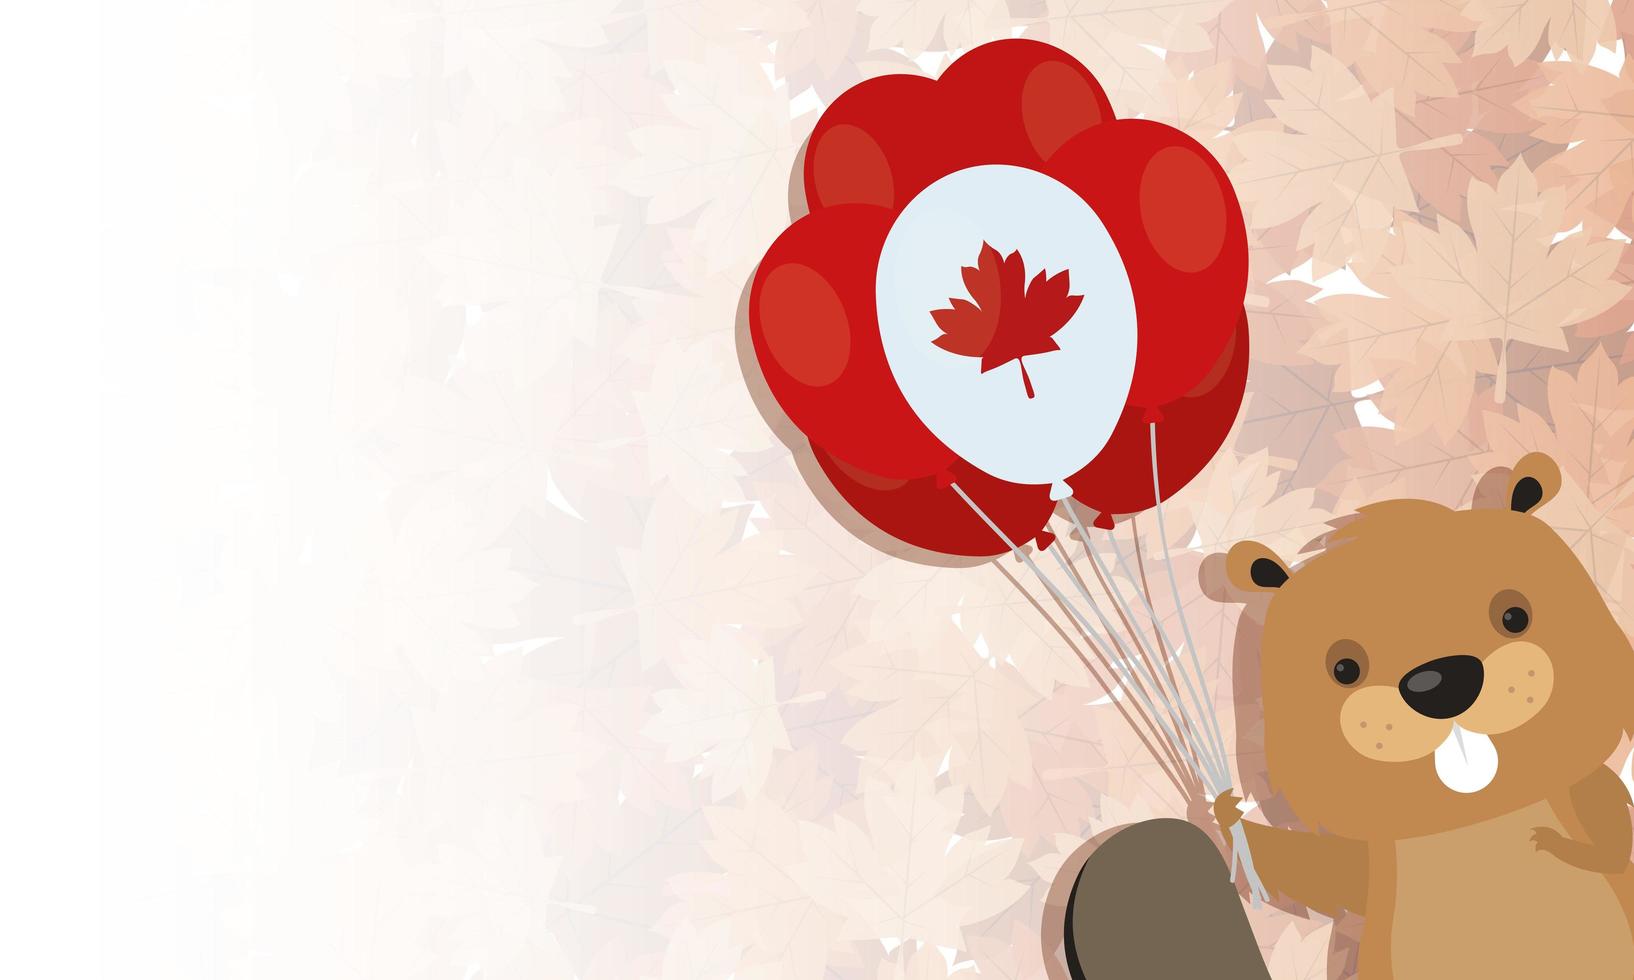 Kanadischer Biber mit Ballon für glücklichen Kanada-Tagesvektorentwurf vektor